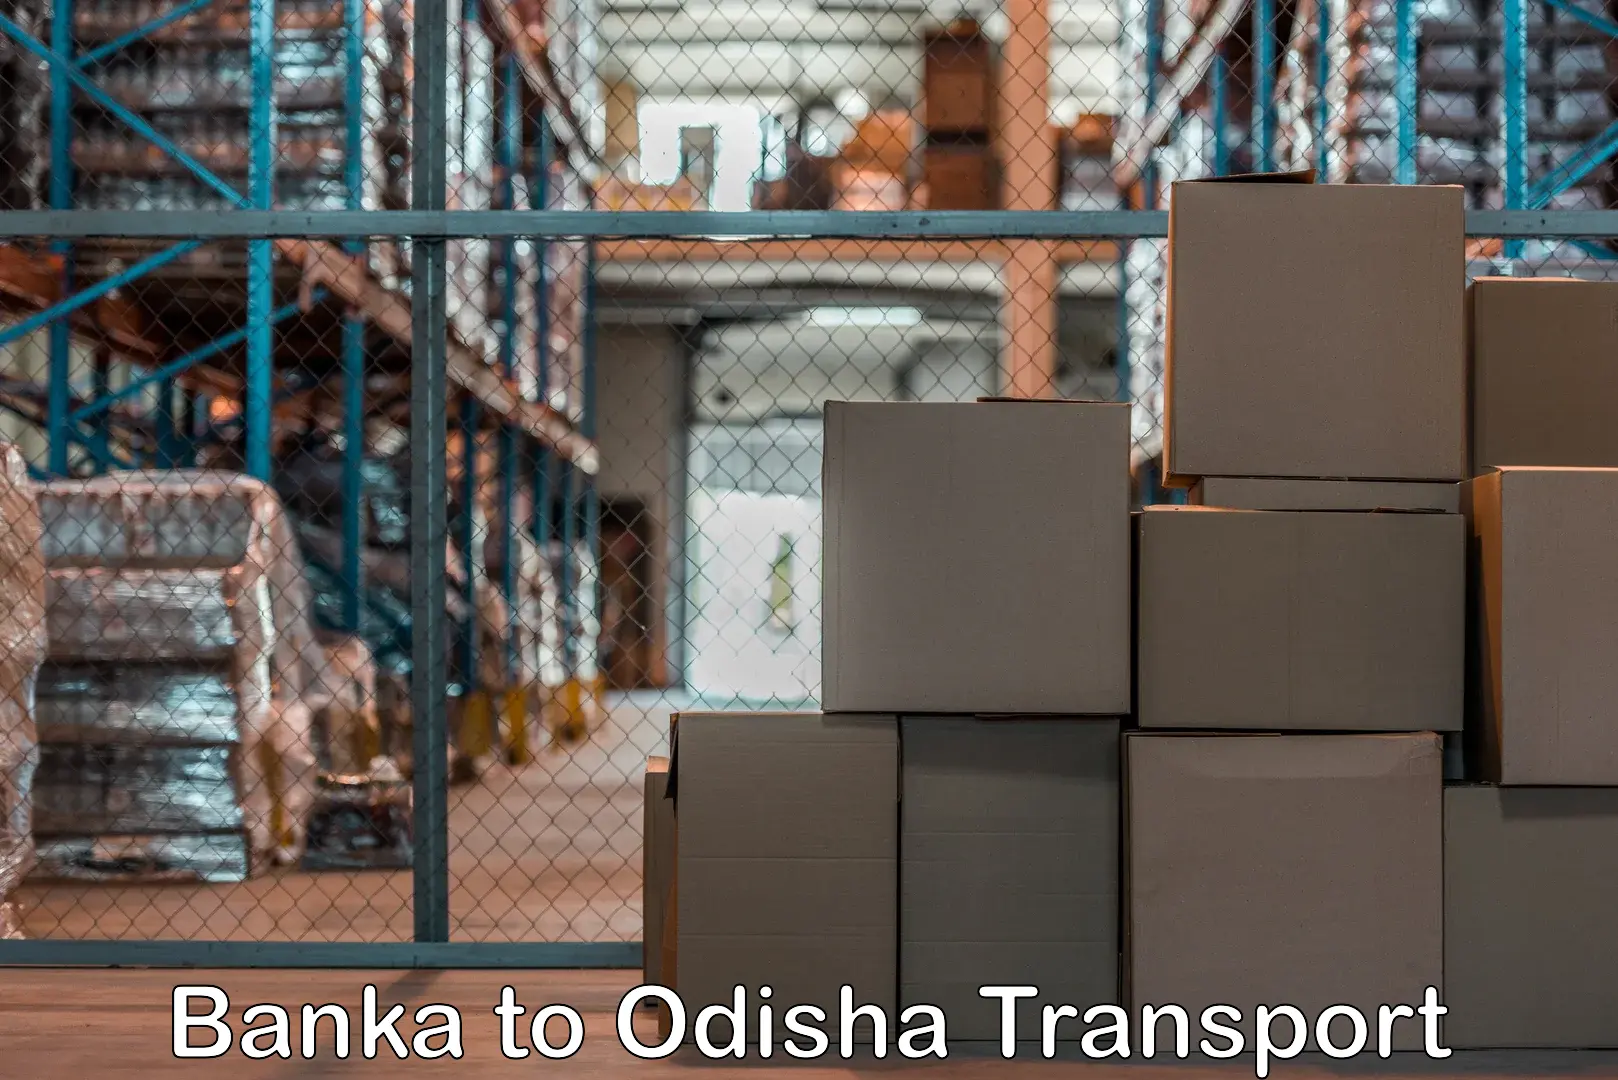 Cargo train transport services Banka to Melchhamunda